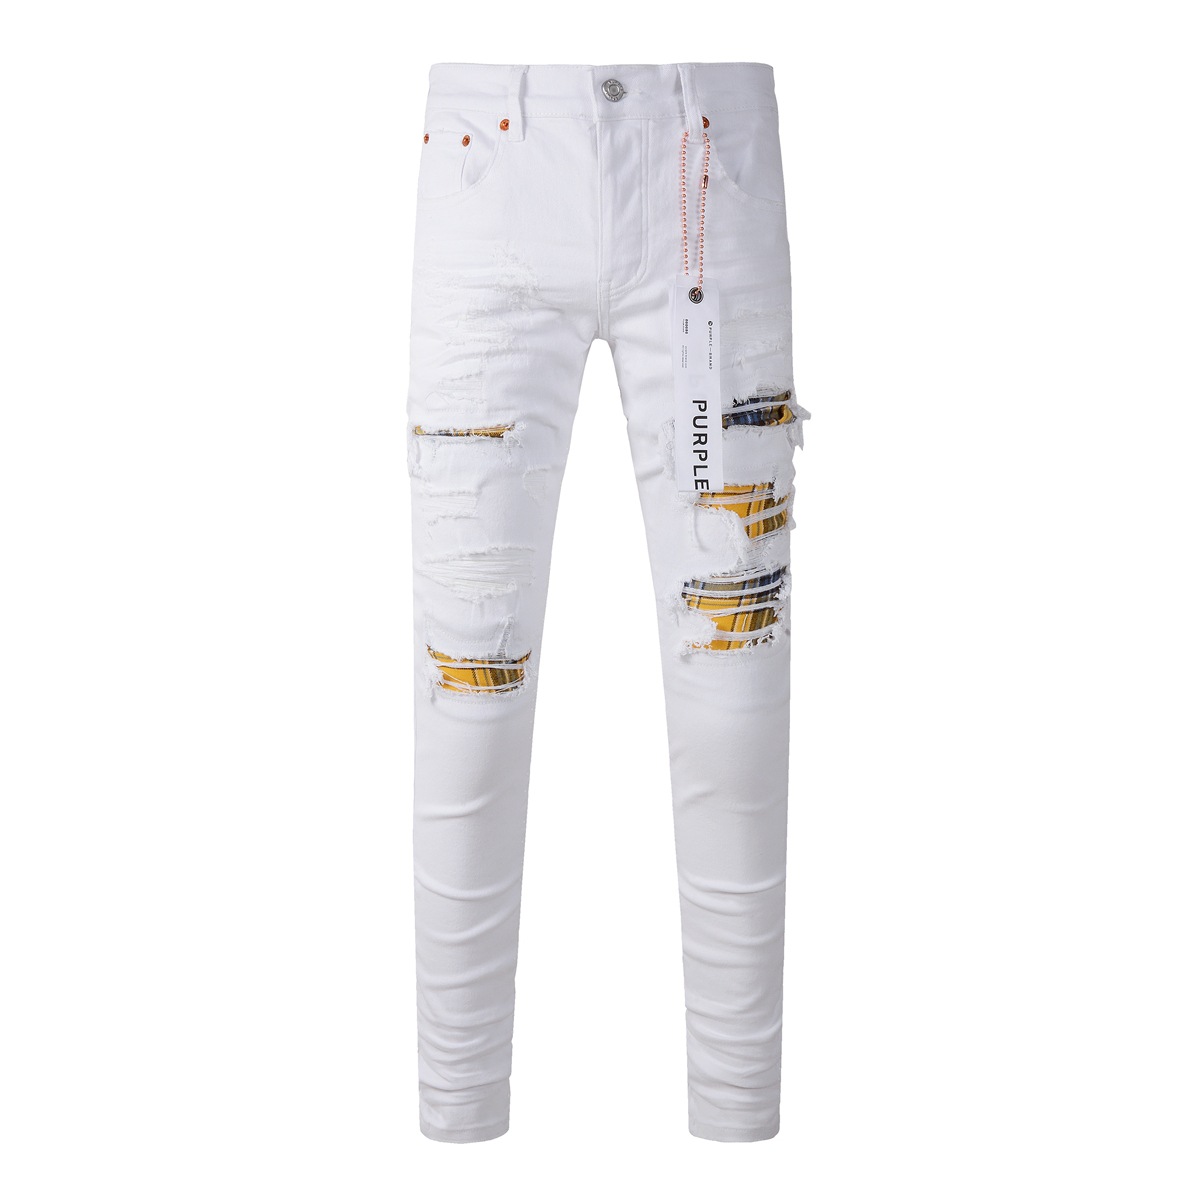 Calça jeans masculina roxa de marca alta, calça branca com buraco remendado, calça jeans tendência